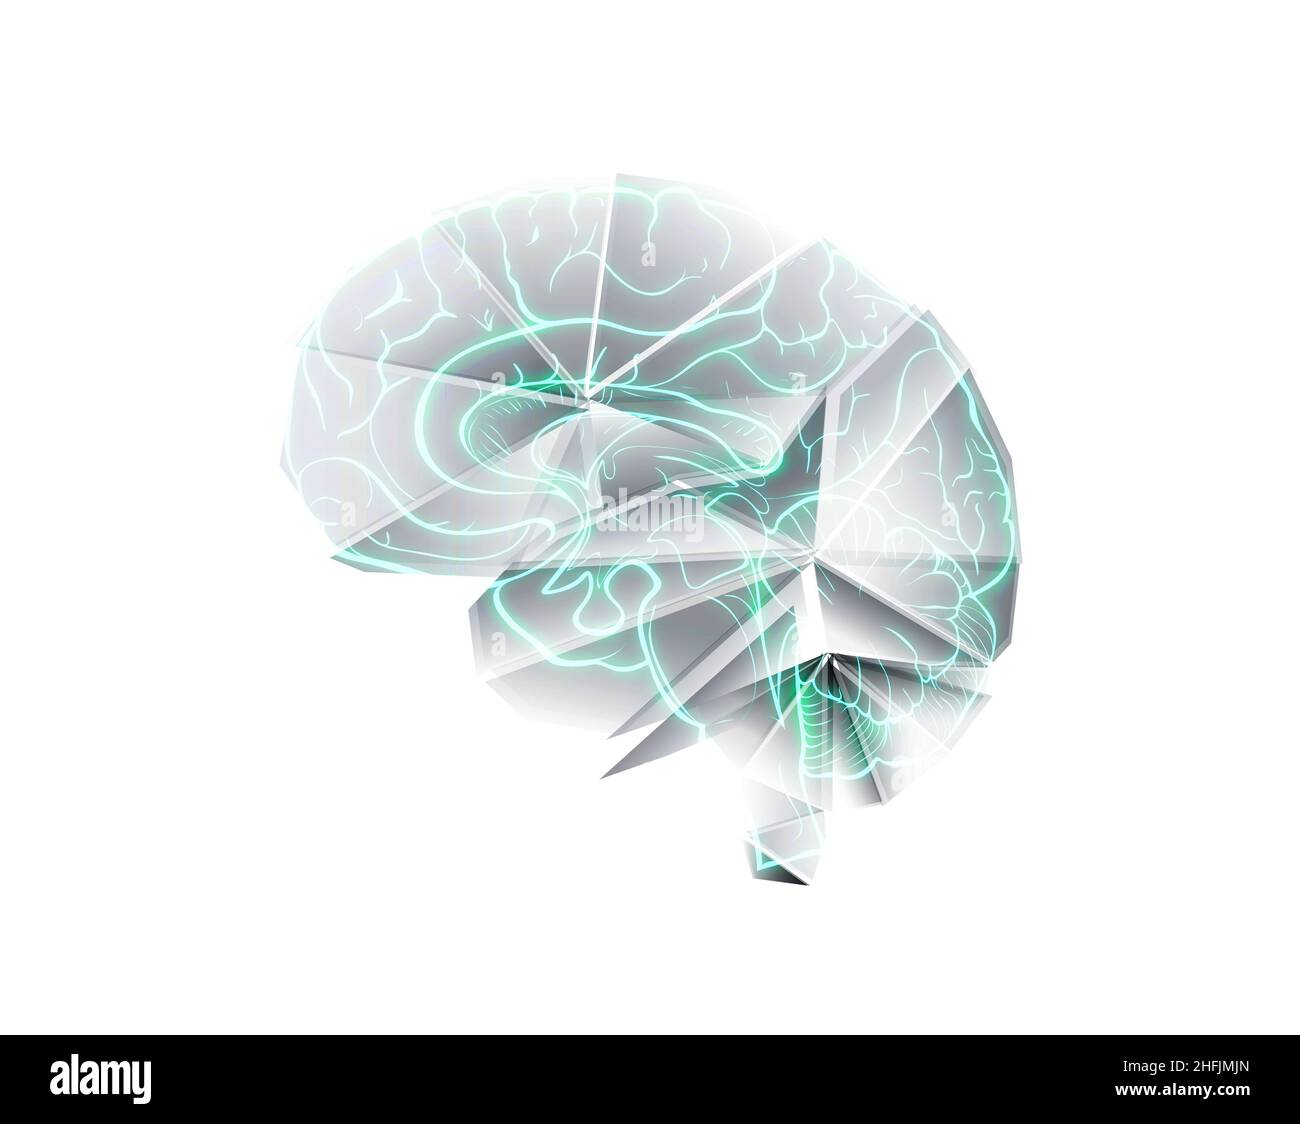 Modell des menschlichen Gehirns, aus Papier im Stil von Origami gefaltet. Stockfoto